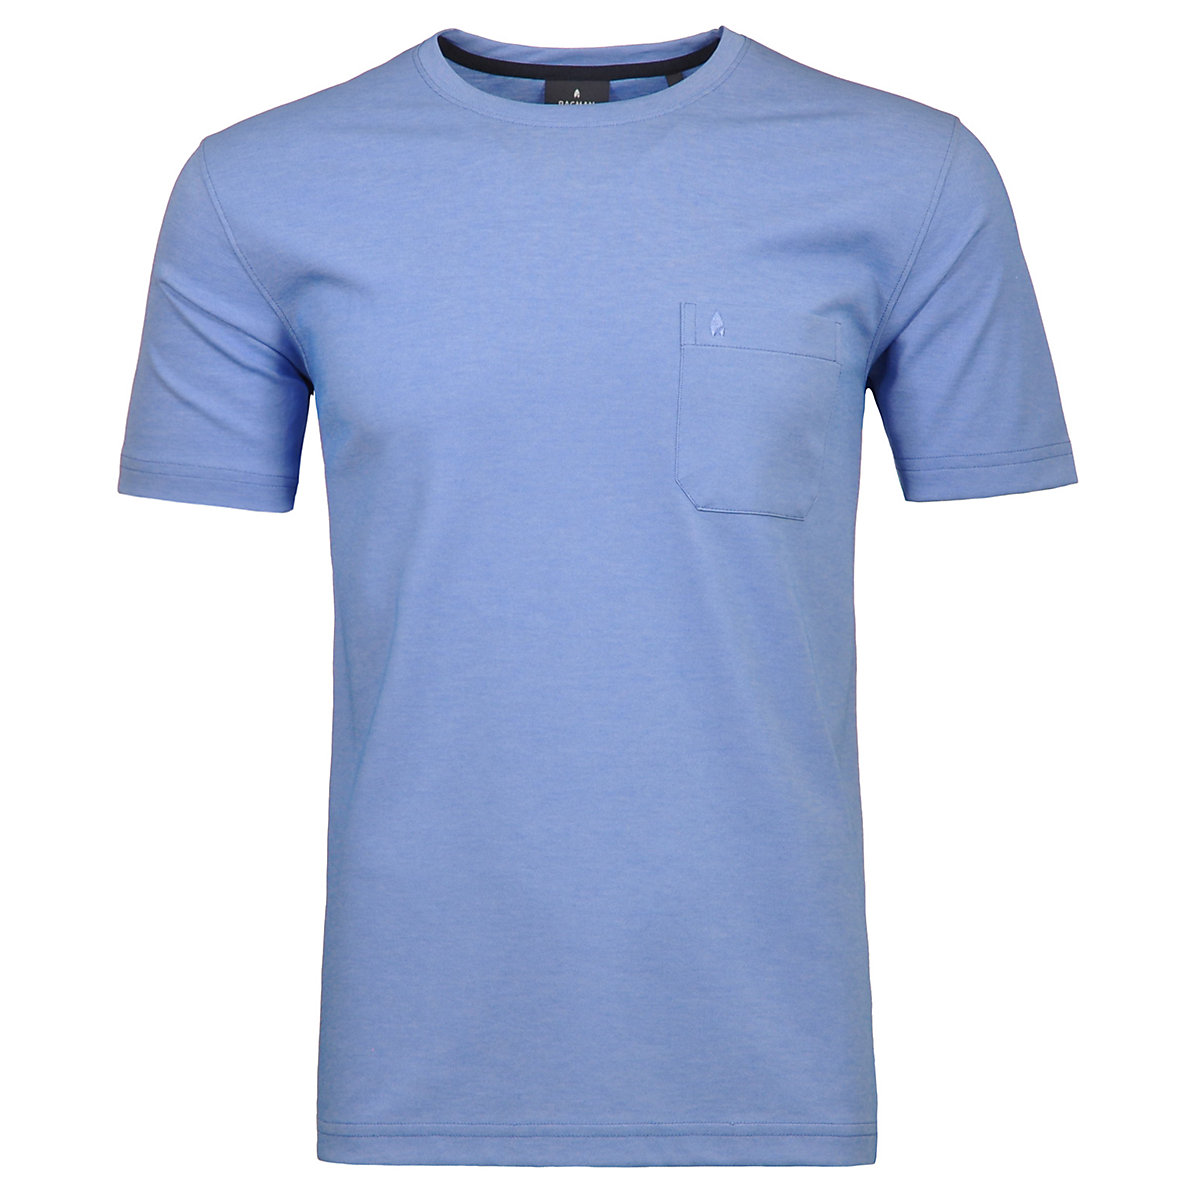 RAGMAN Softknit T-Shirt Rundhals mit Brusttasche T-Shirts blau